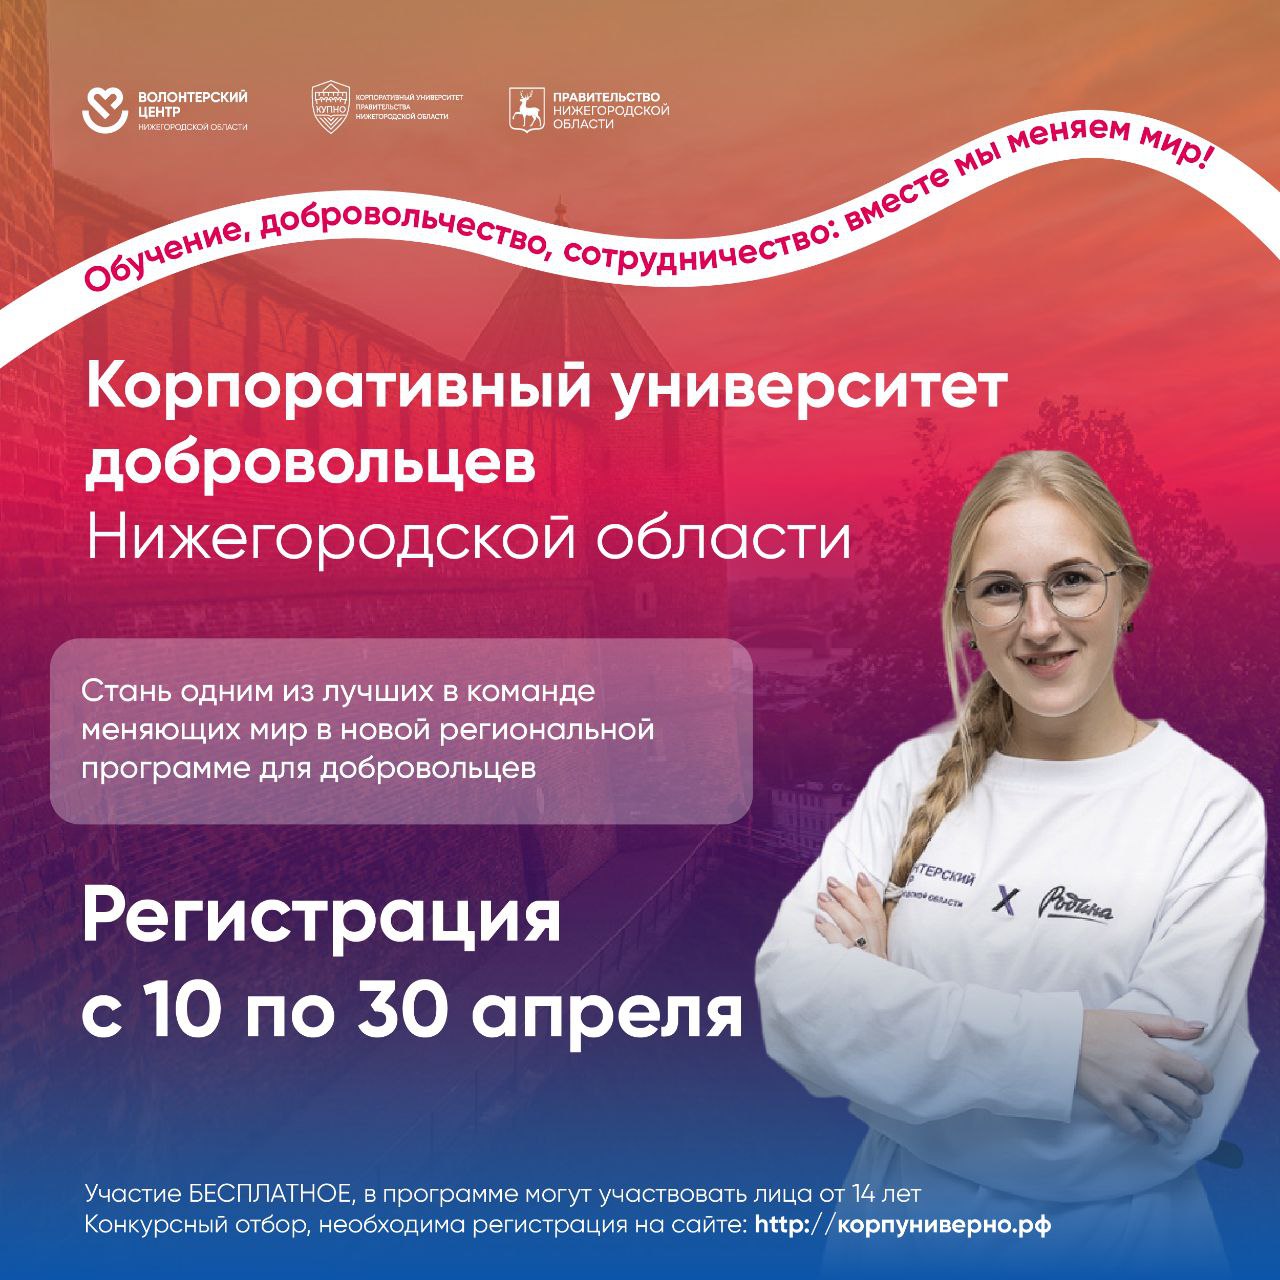 Открыт прием заявок на обучение в Корпоративном университете добровольцев Нижегородской области